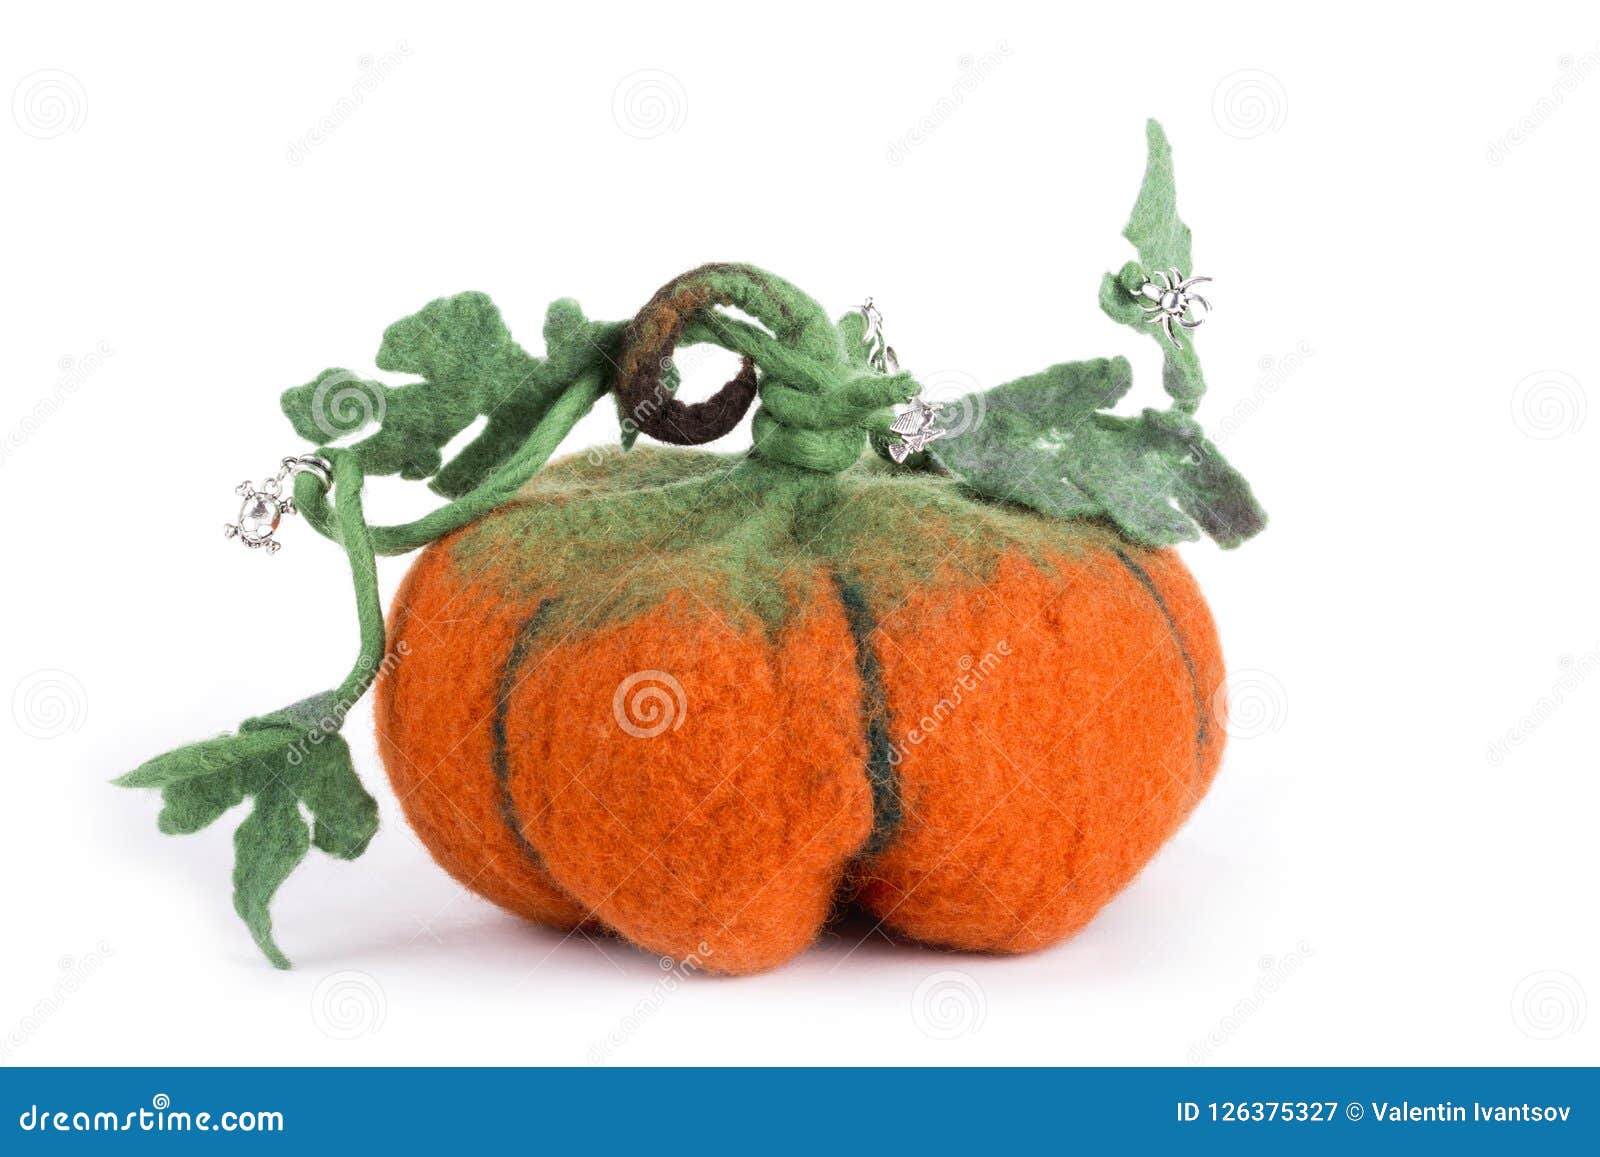 reparatie Onverenigbaar Glad De Pompoen Met De Hand Gemaakt Van Felted Wol Voor Viering Van Halloween  Stock Afbeelding - Image of vrucht, viering: 126375327